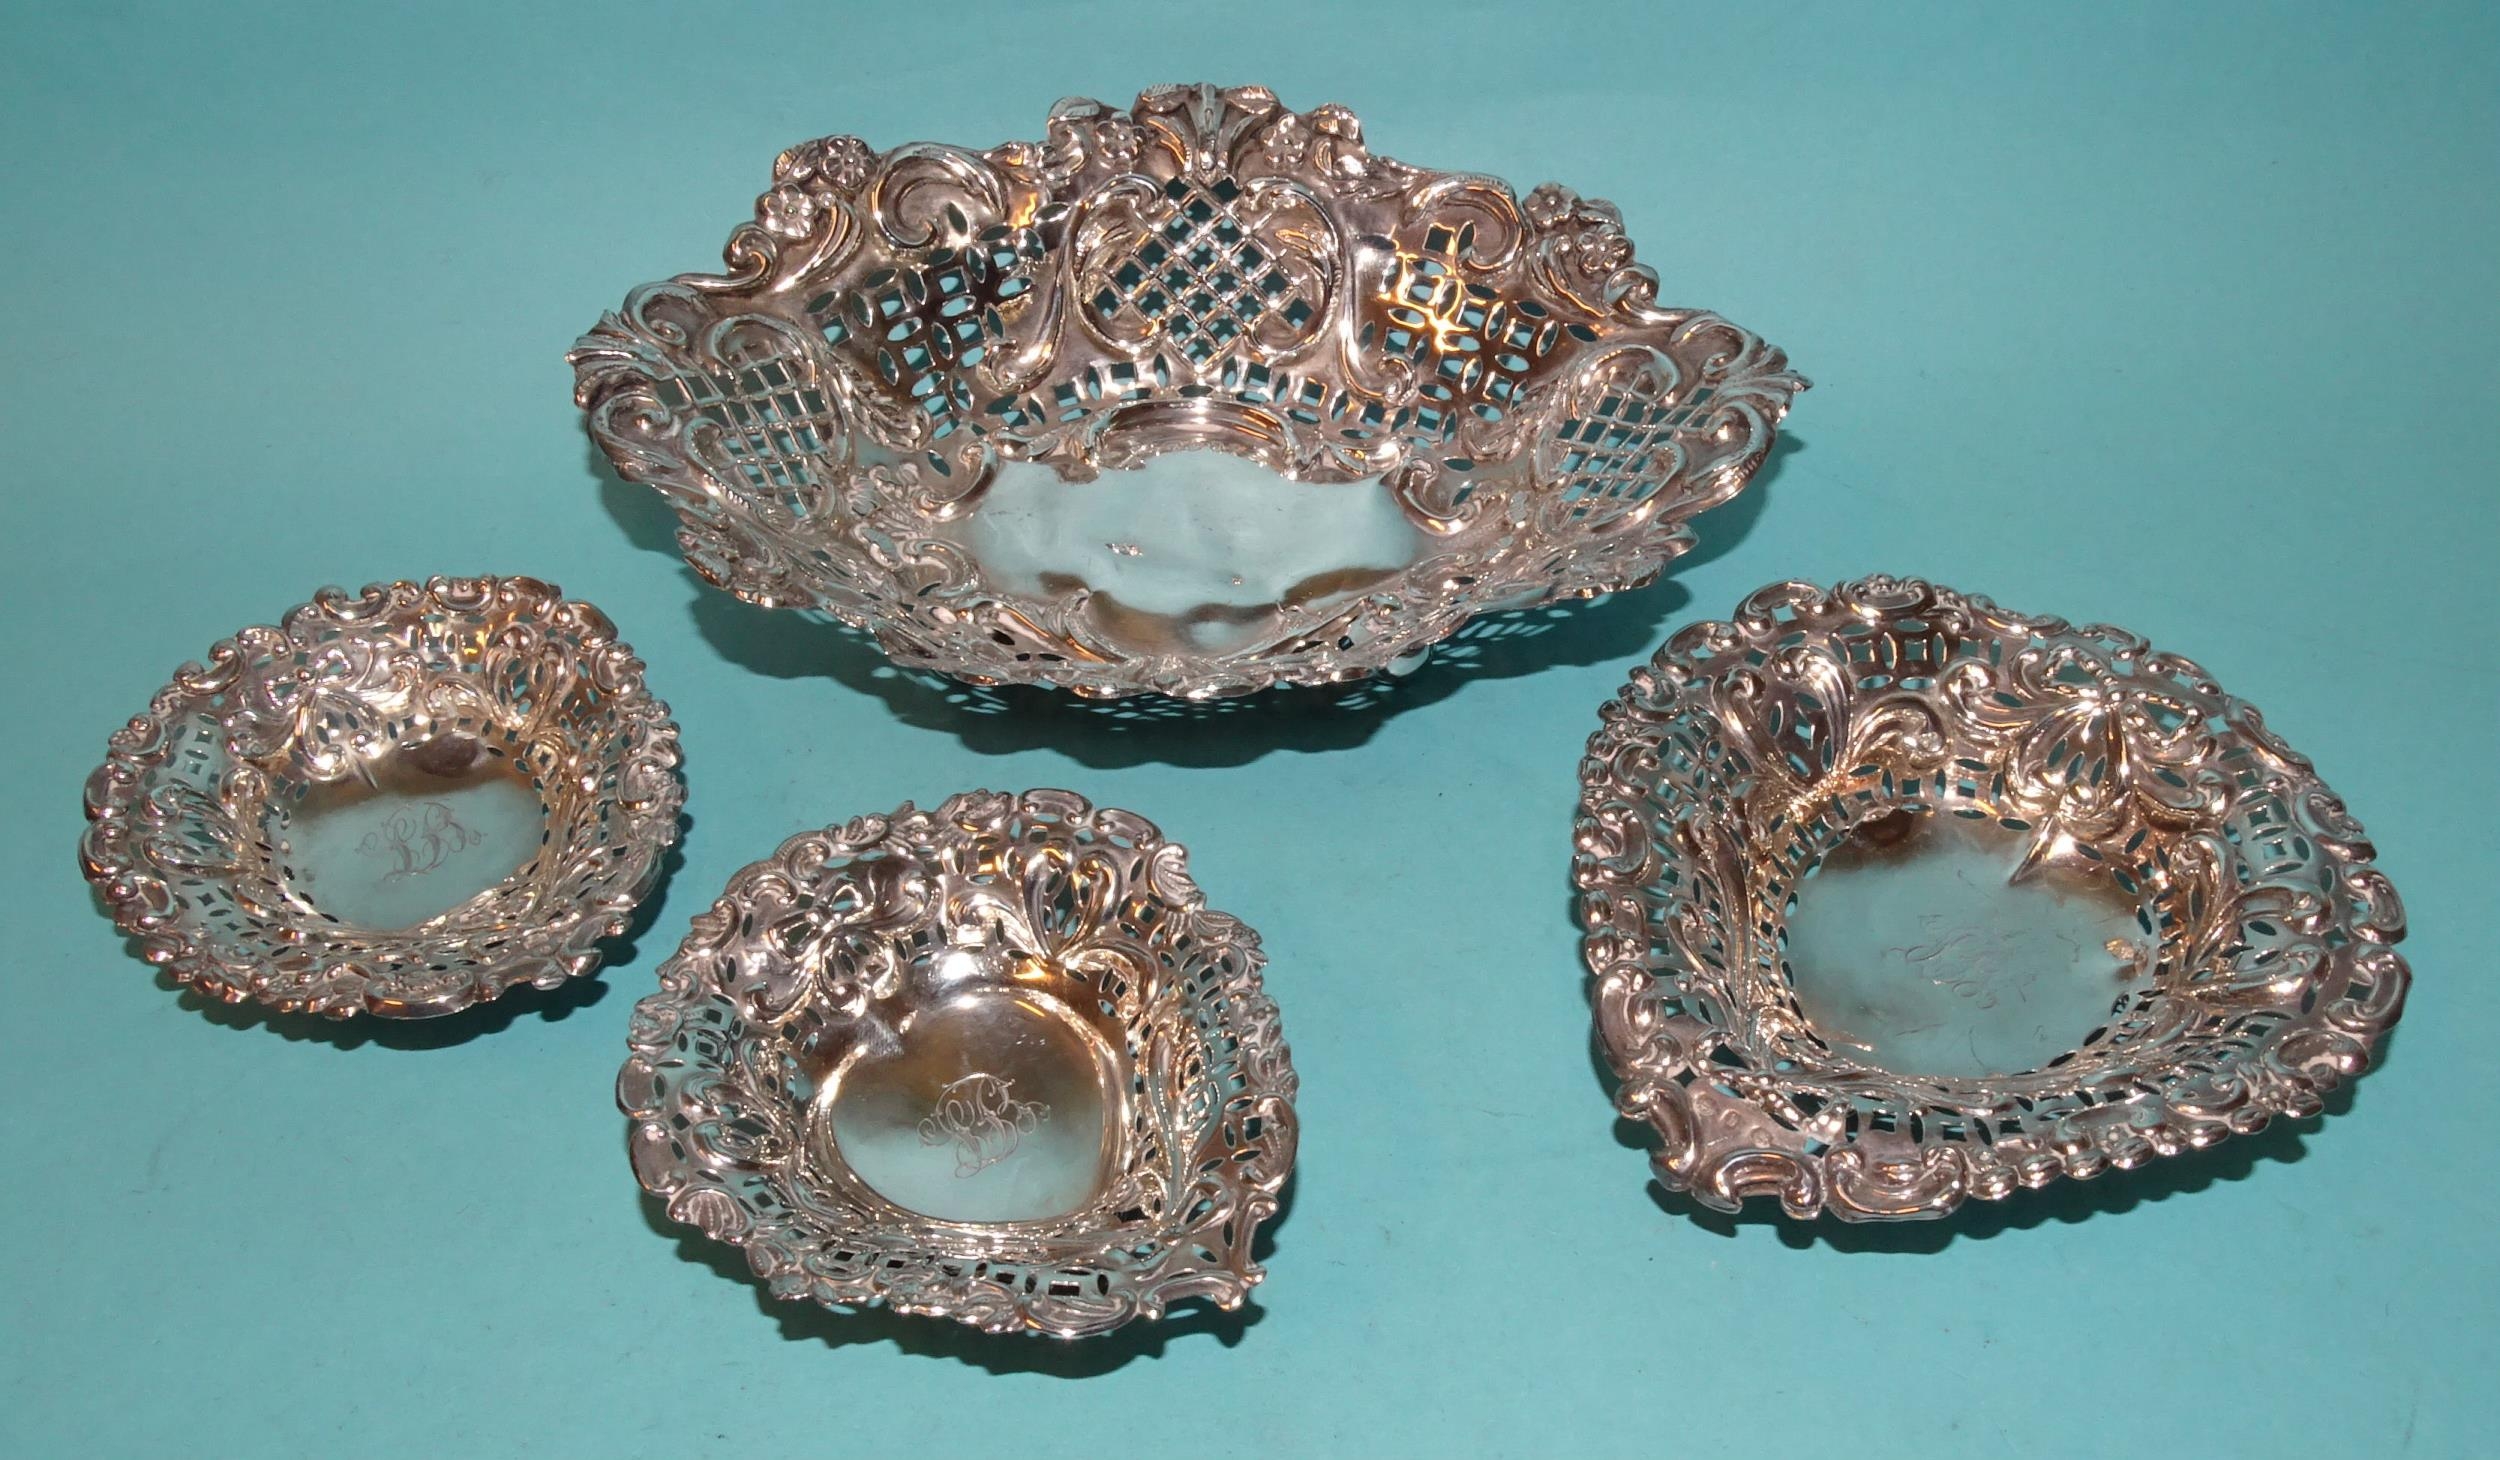 A late-Victorian silver pierced bonbon dish, 18.5 x 13.5cm, Chester 1896, a heart-shaped silver